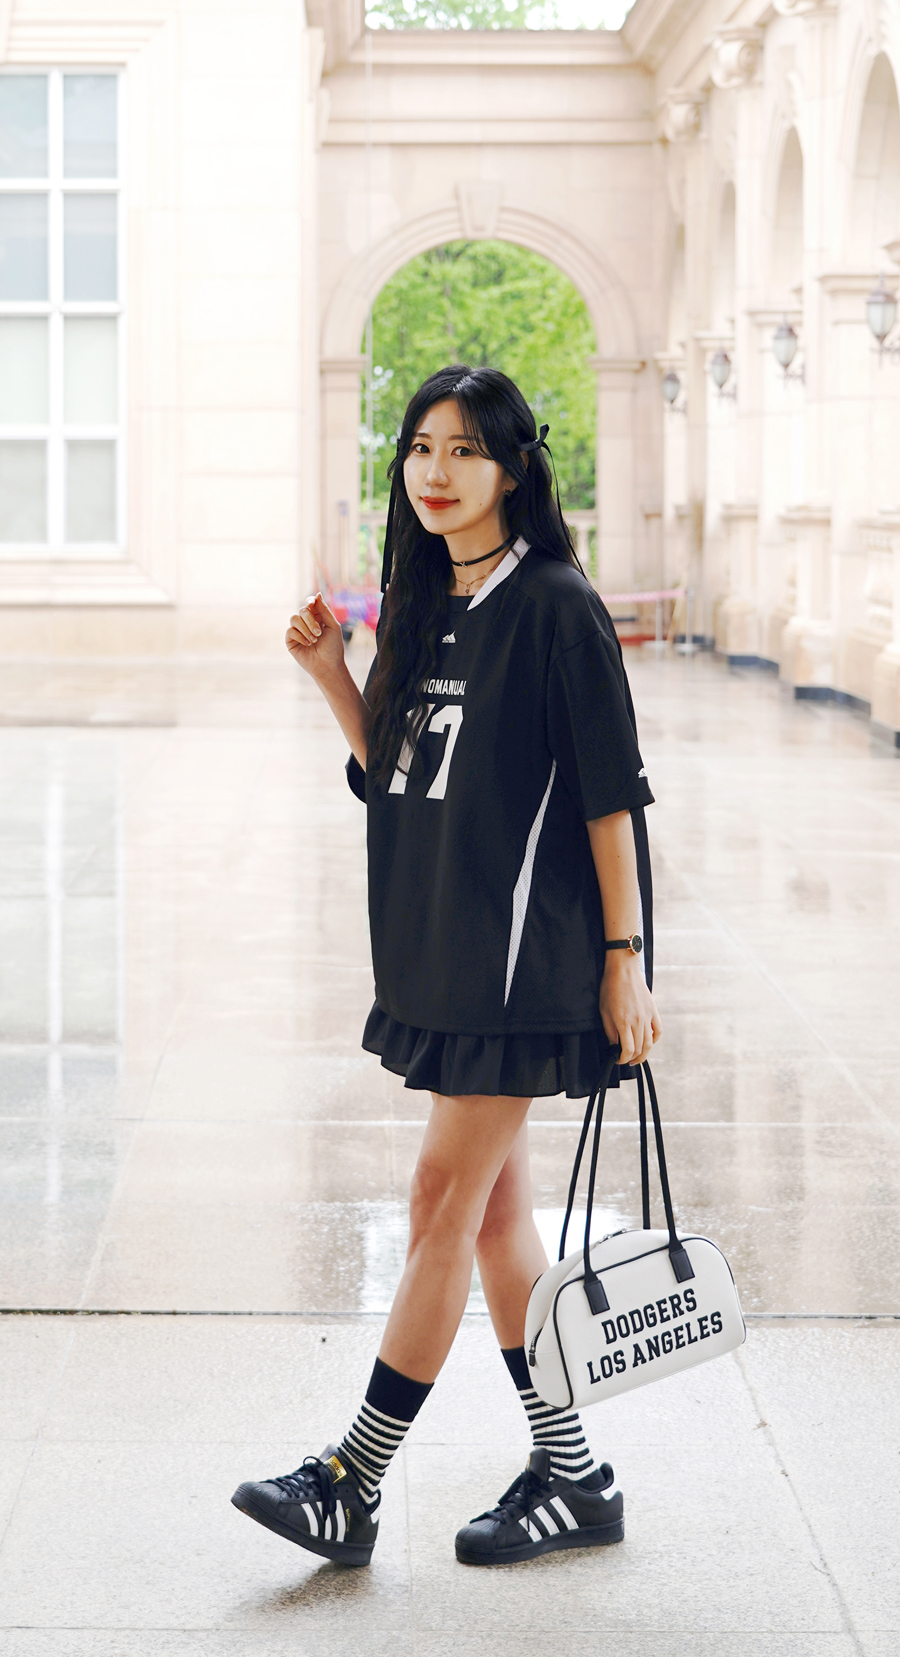 레드벨벳 슬기 패션 노매뉴얼 블록코어 반팔 티셔츠 코디